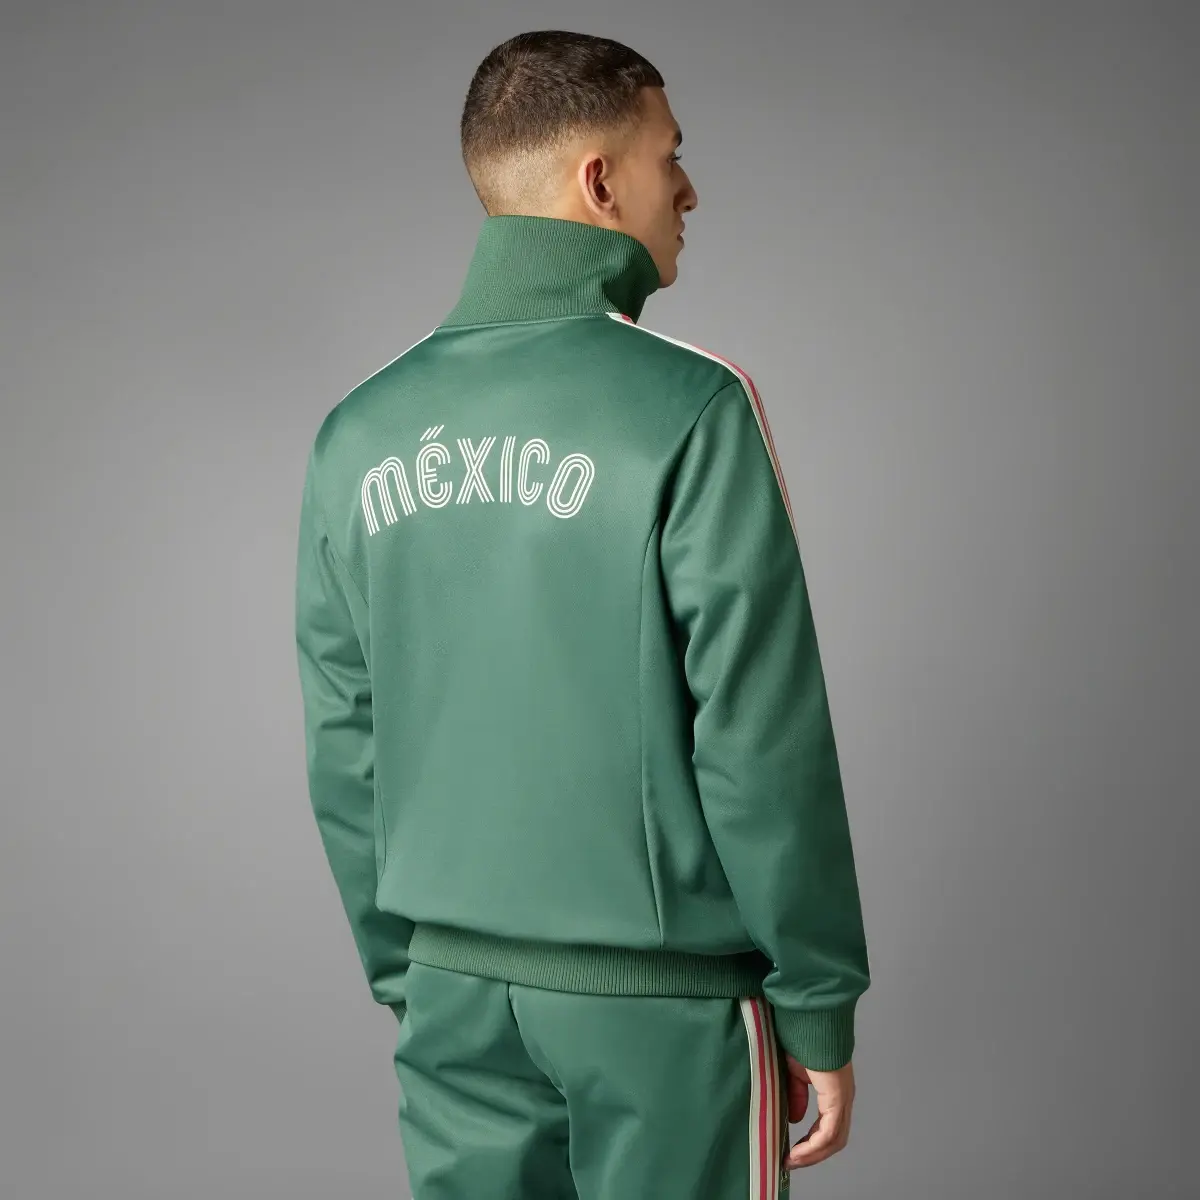 Adidas Chamarra Beckenbauer Selección Nacional de México. 2